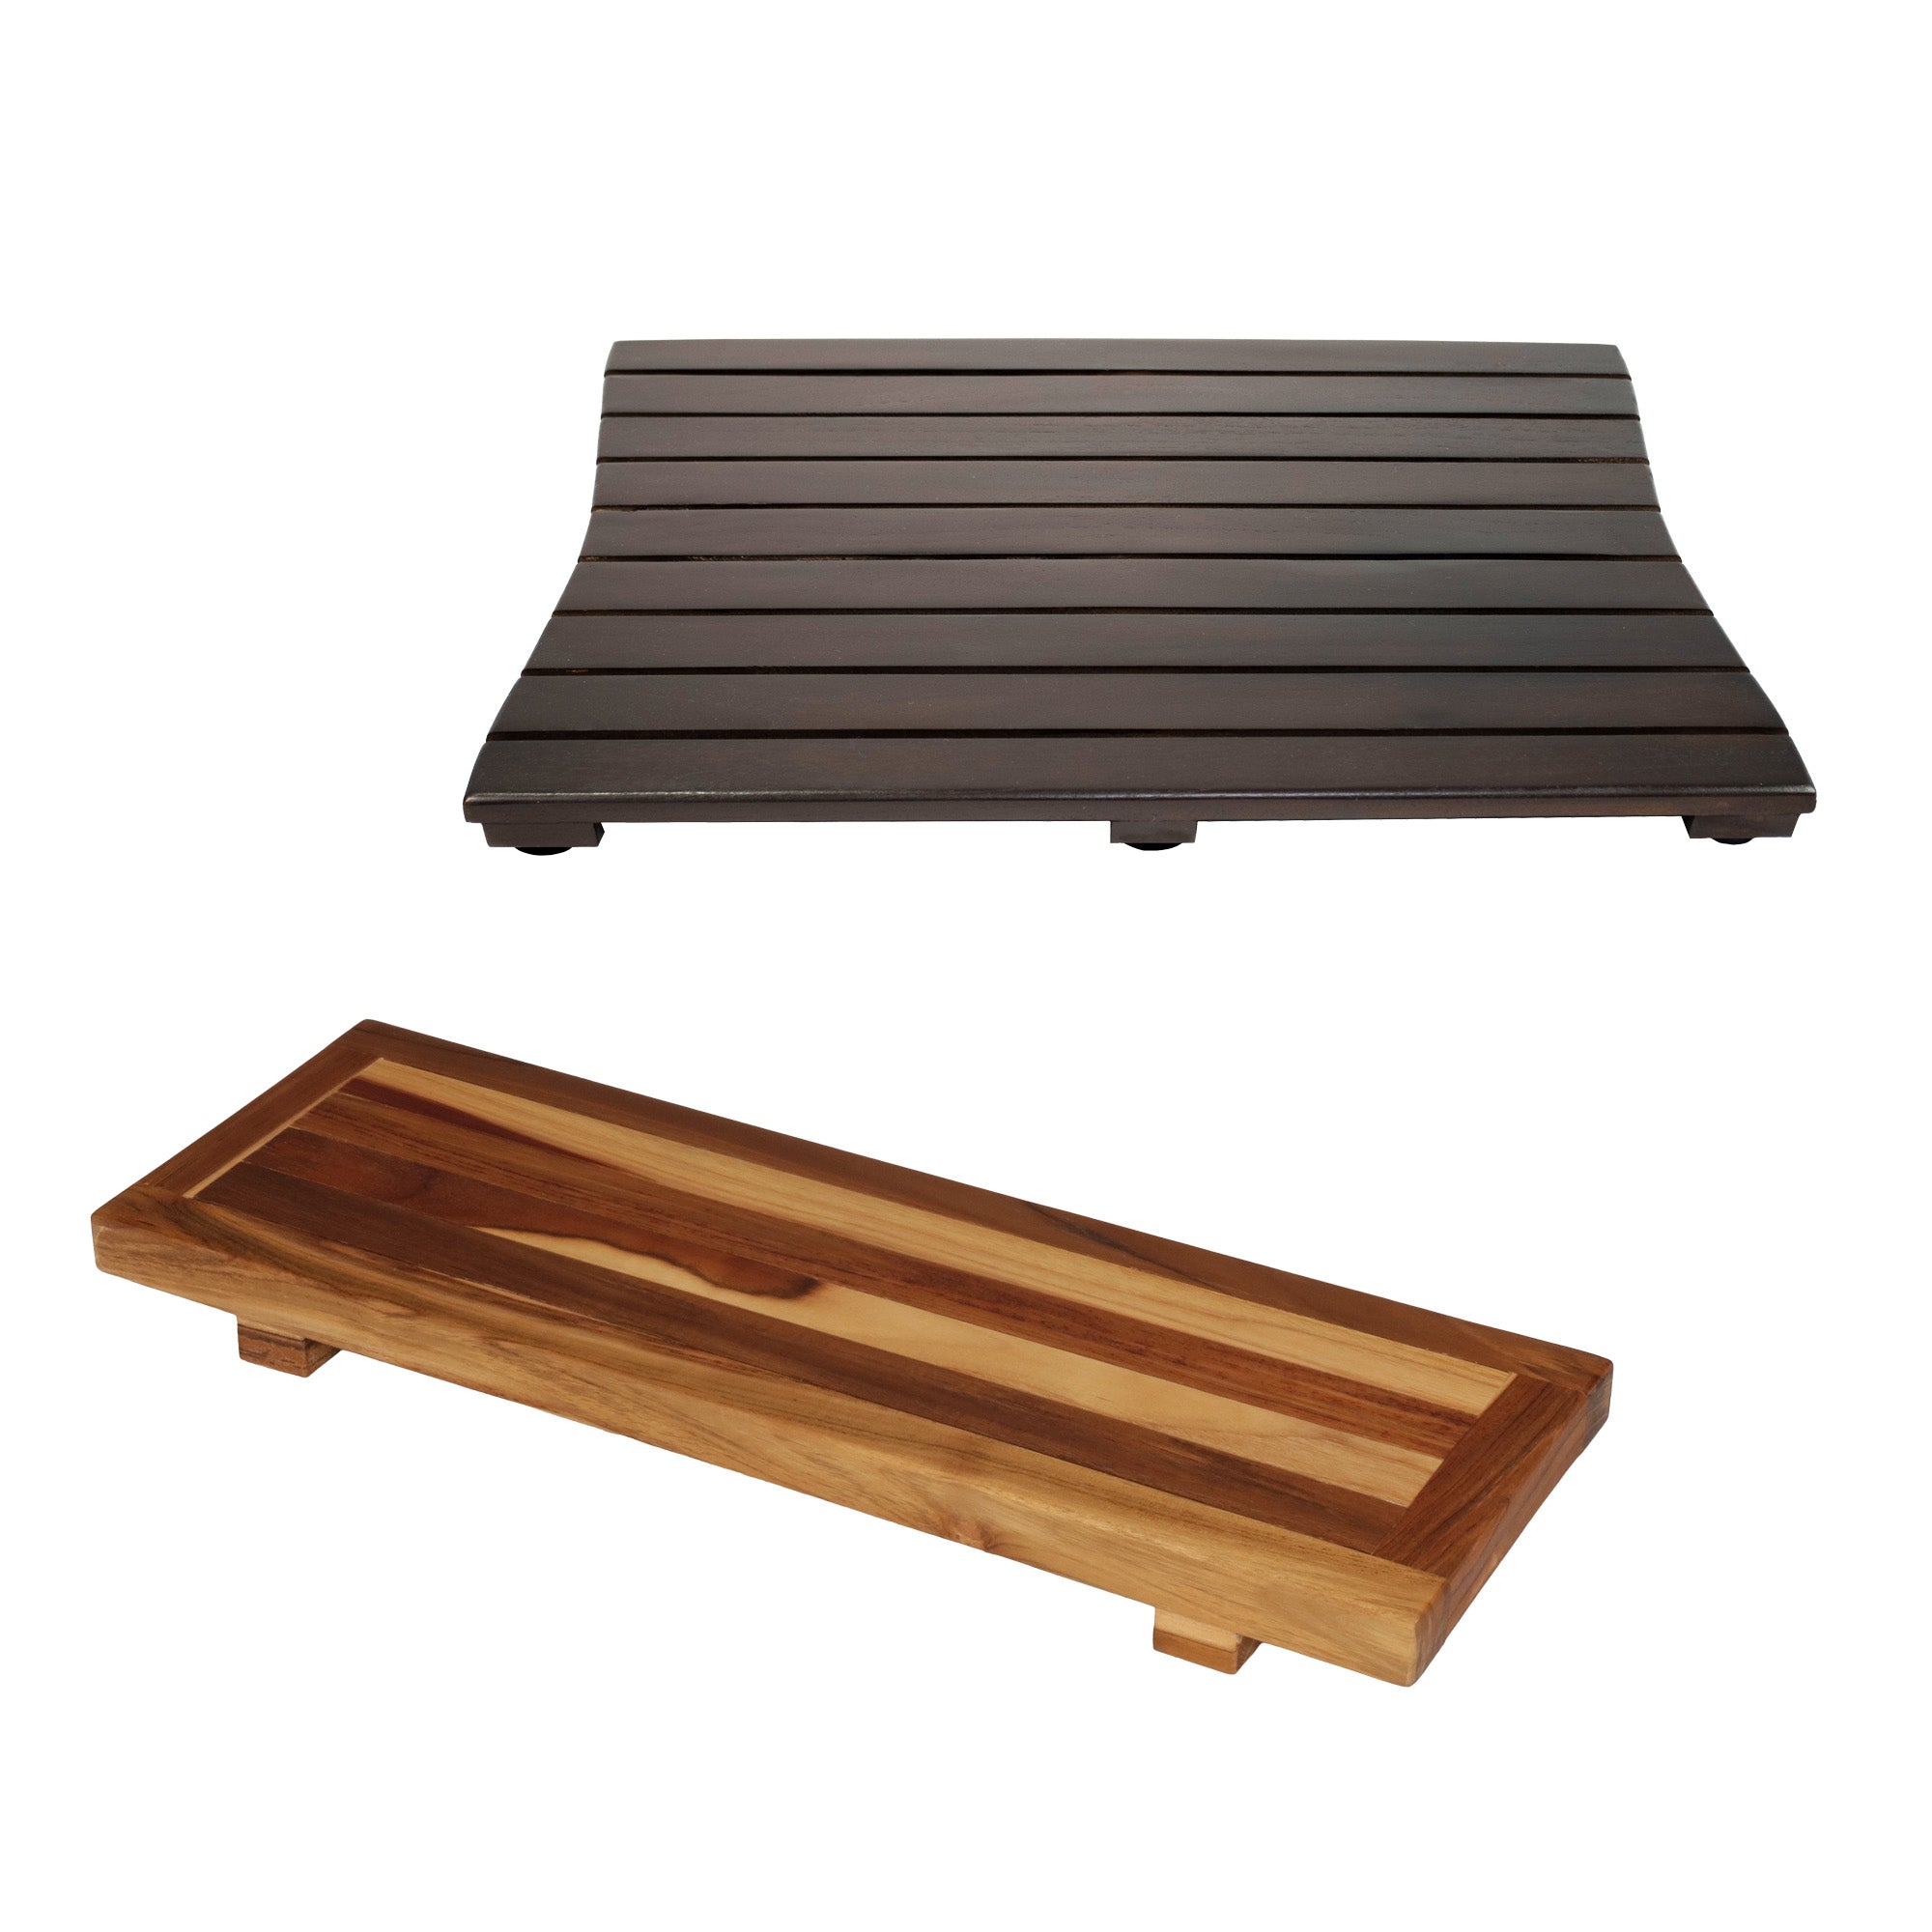 EcoDecors® Eleganto® 29" Teak Wood Bath Tray and Seat in EarthyTeak Finish - DecoTeak® Eleganto® 23”W Teak Floor Mat in a Woodland Brown Finish